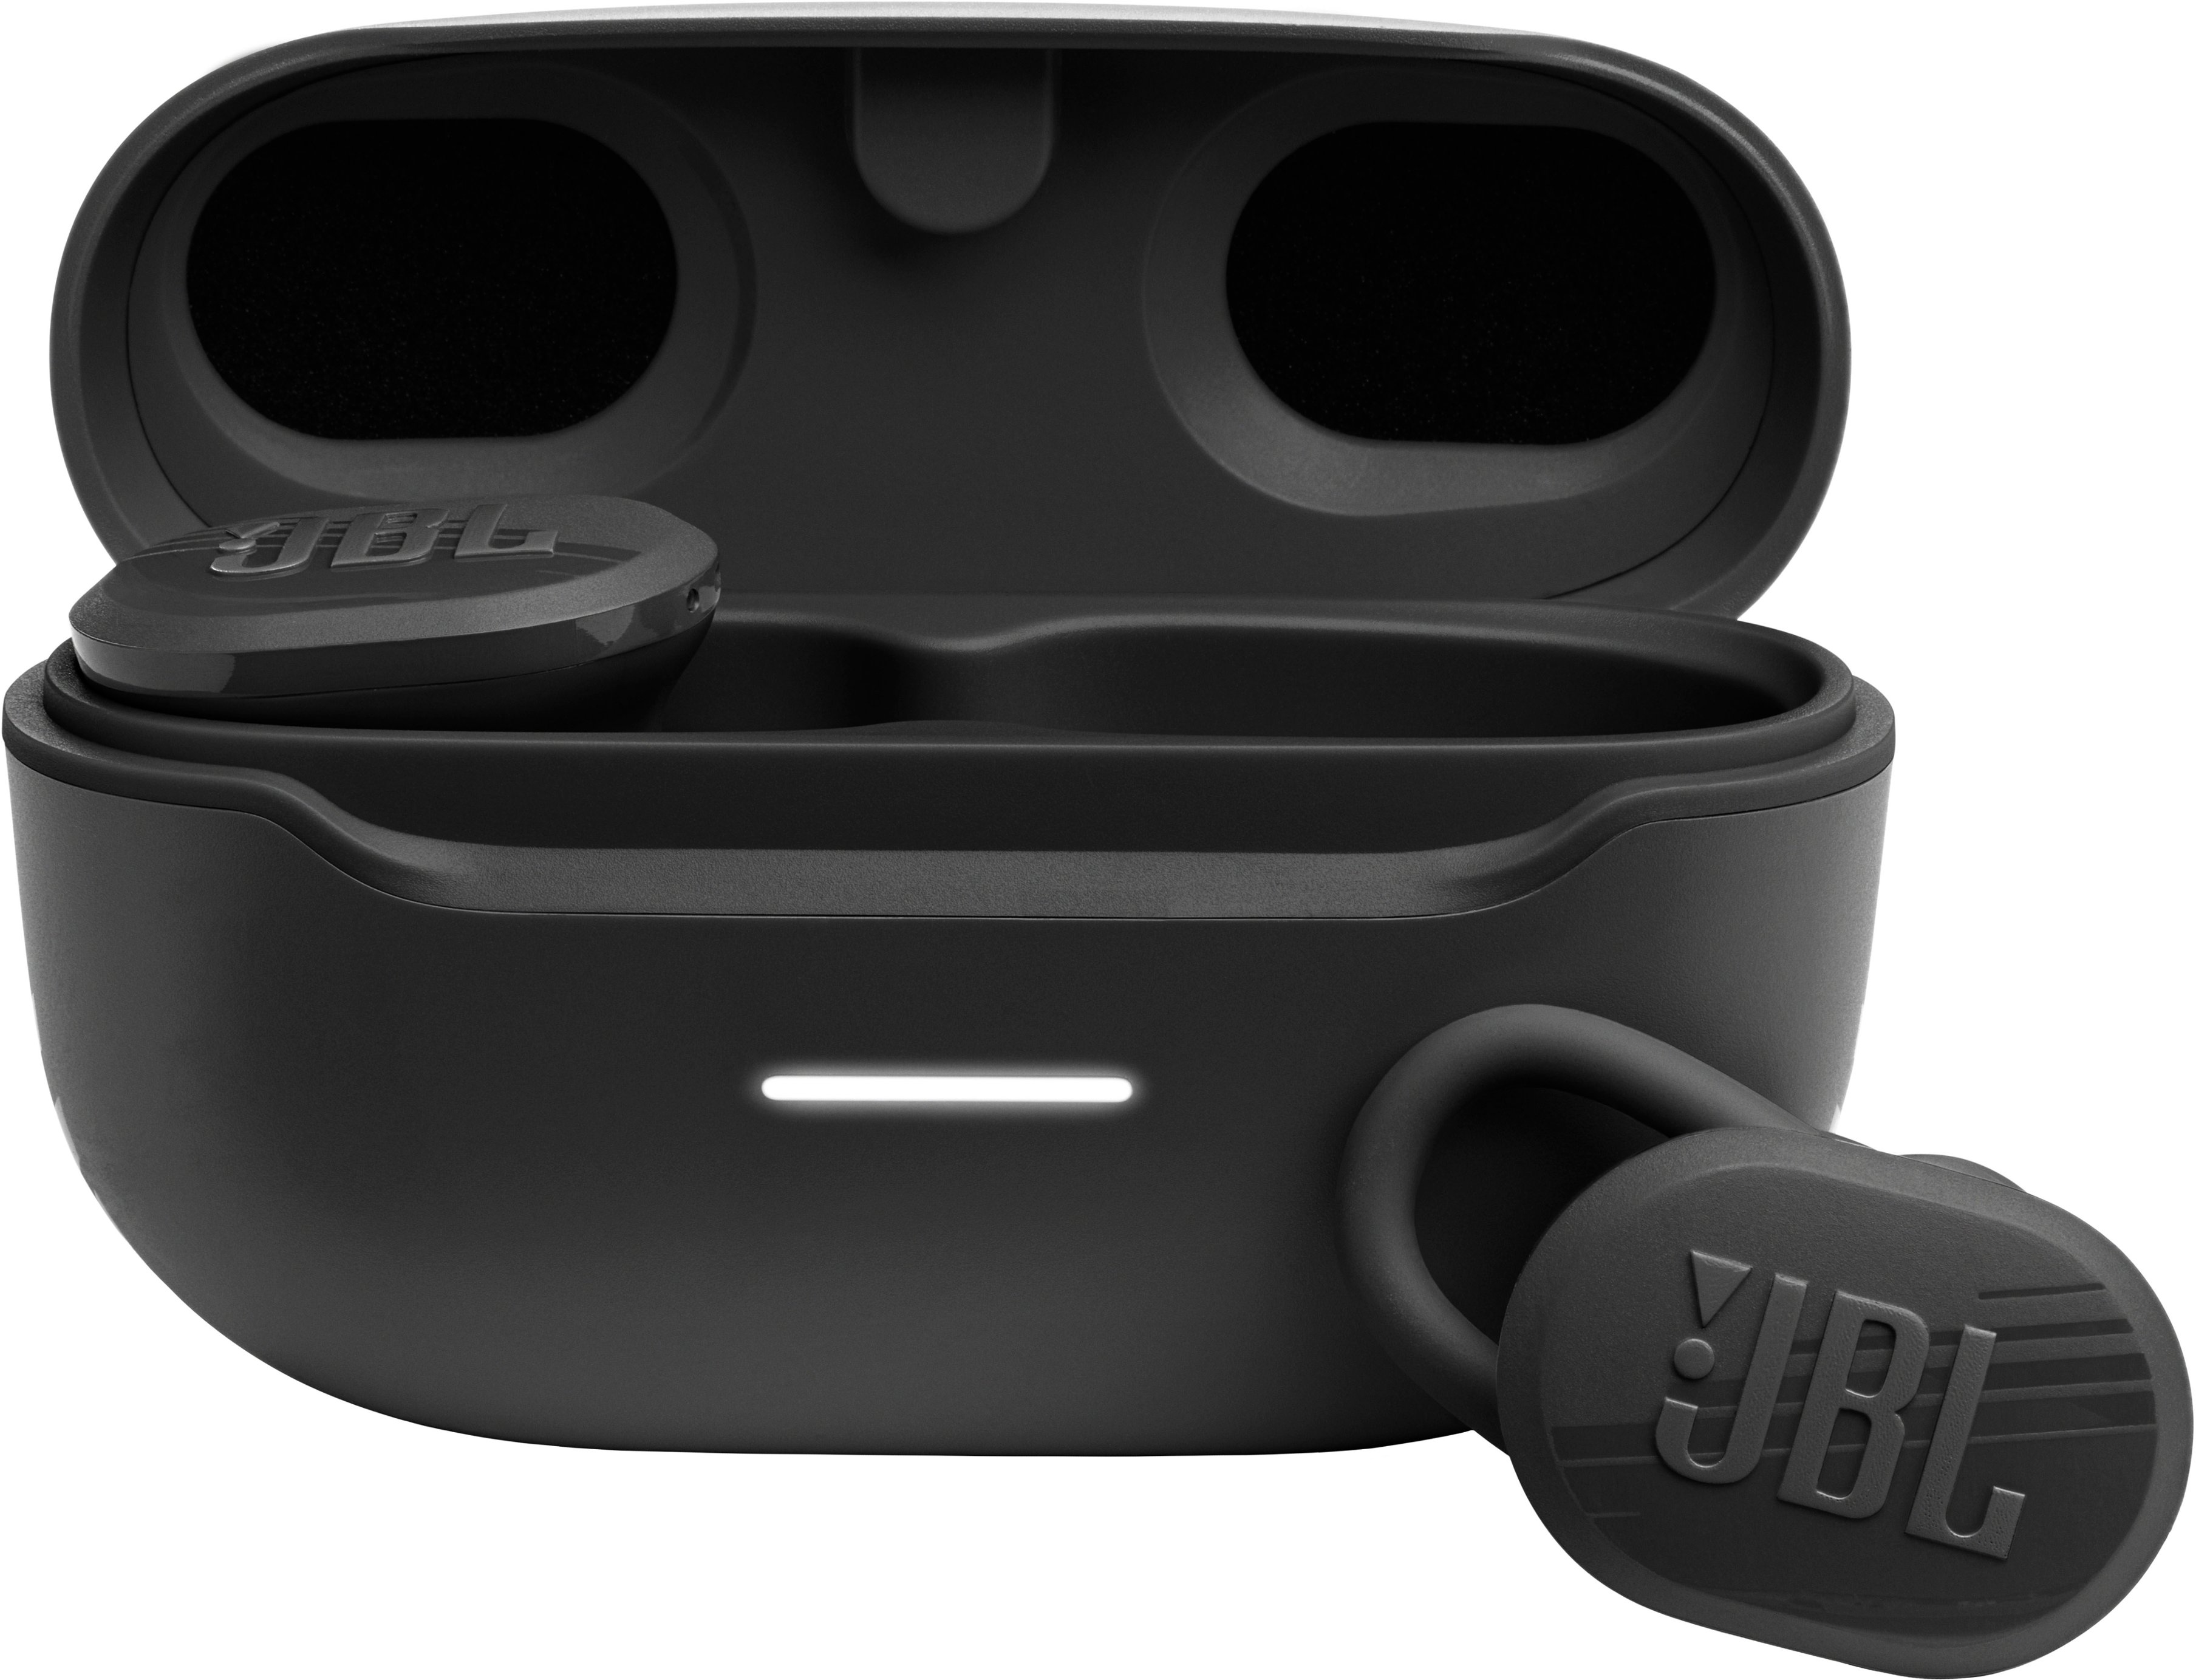 Distrahere Etna postkontor JBL Endurance Race Waterproof True Wireless Sport Earbud Headphones Black  JBLENDURACEBLKAM - Best Buy